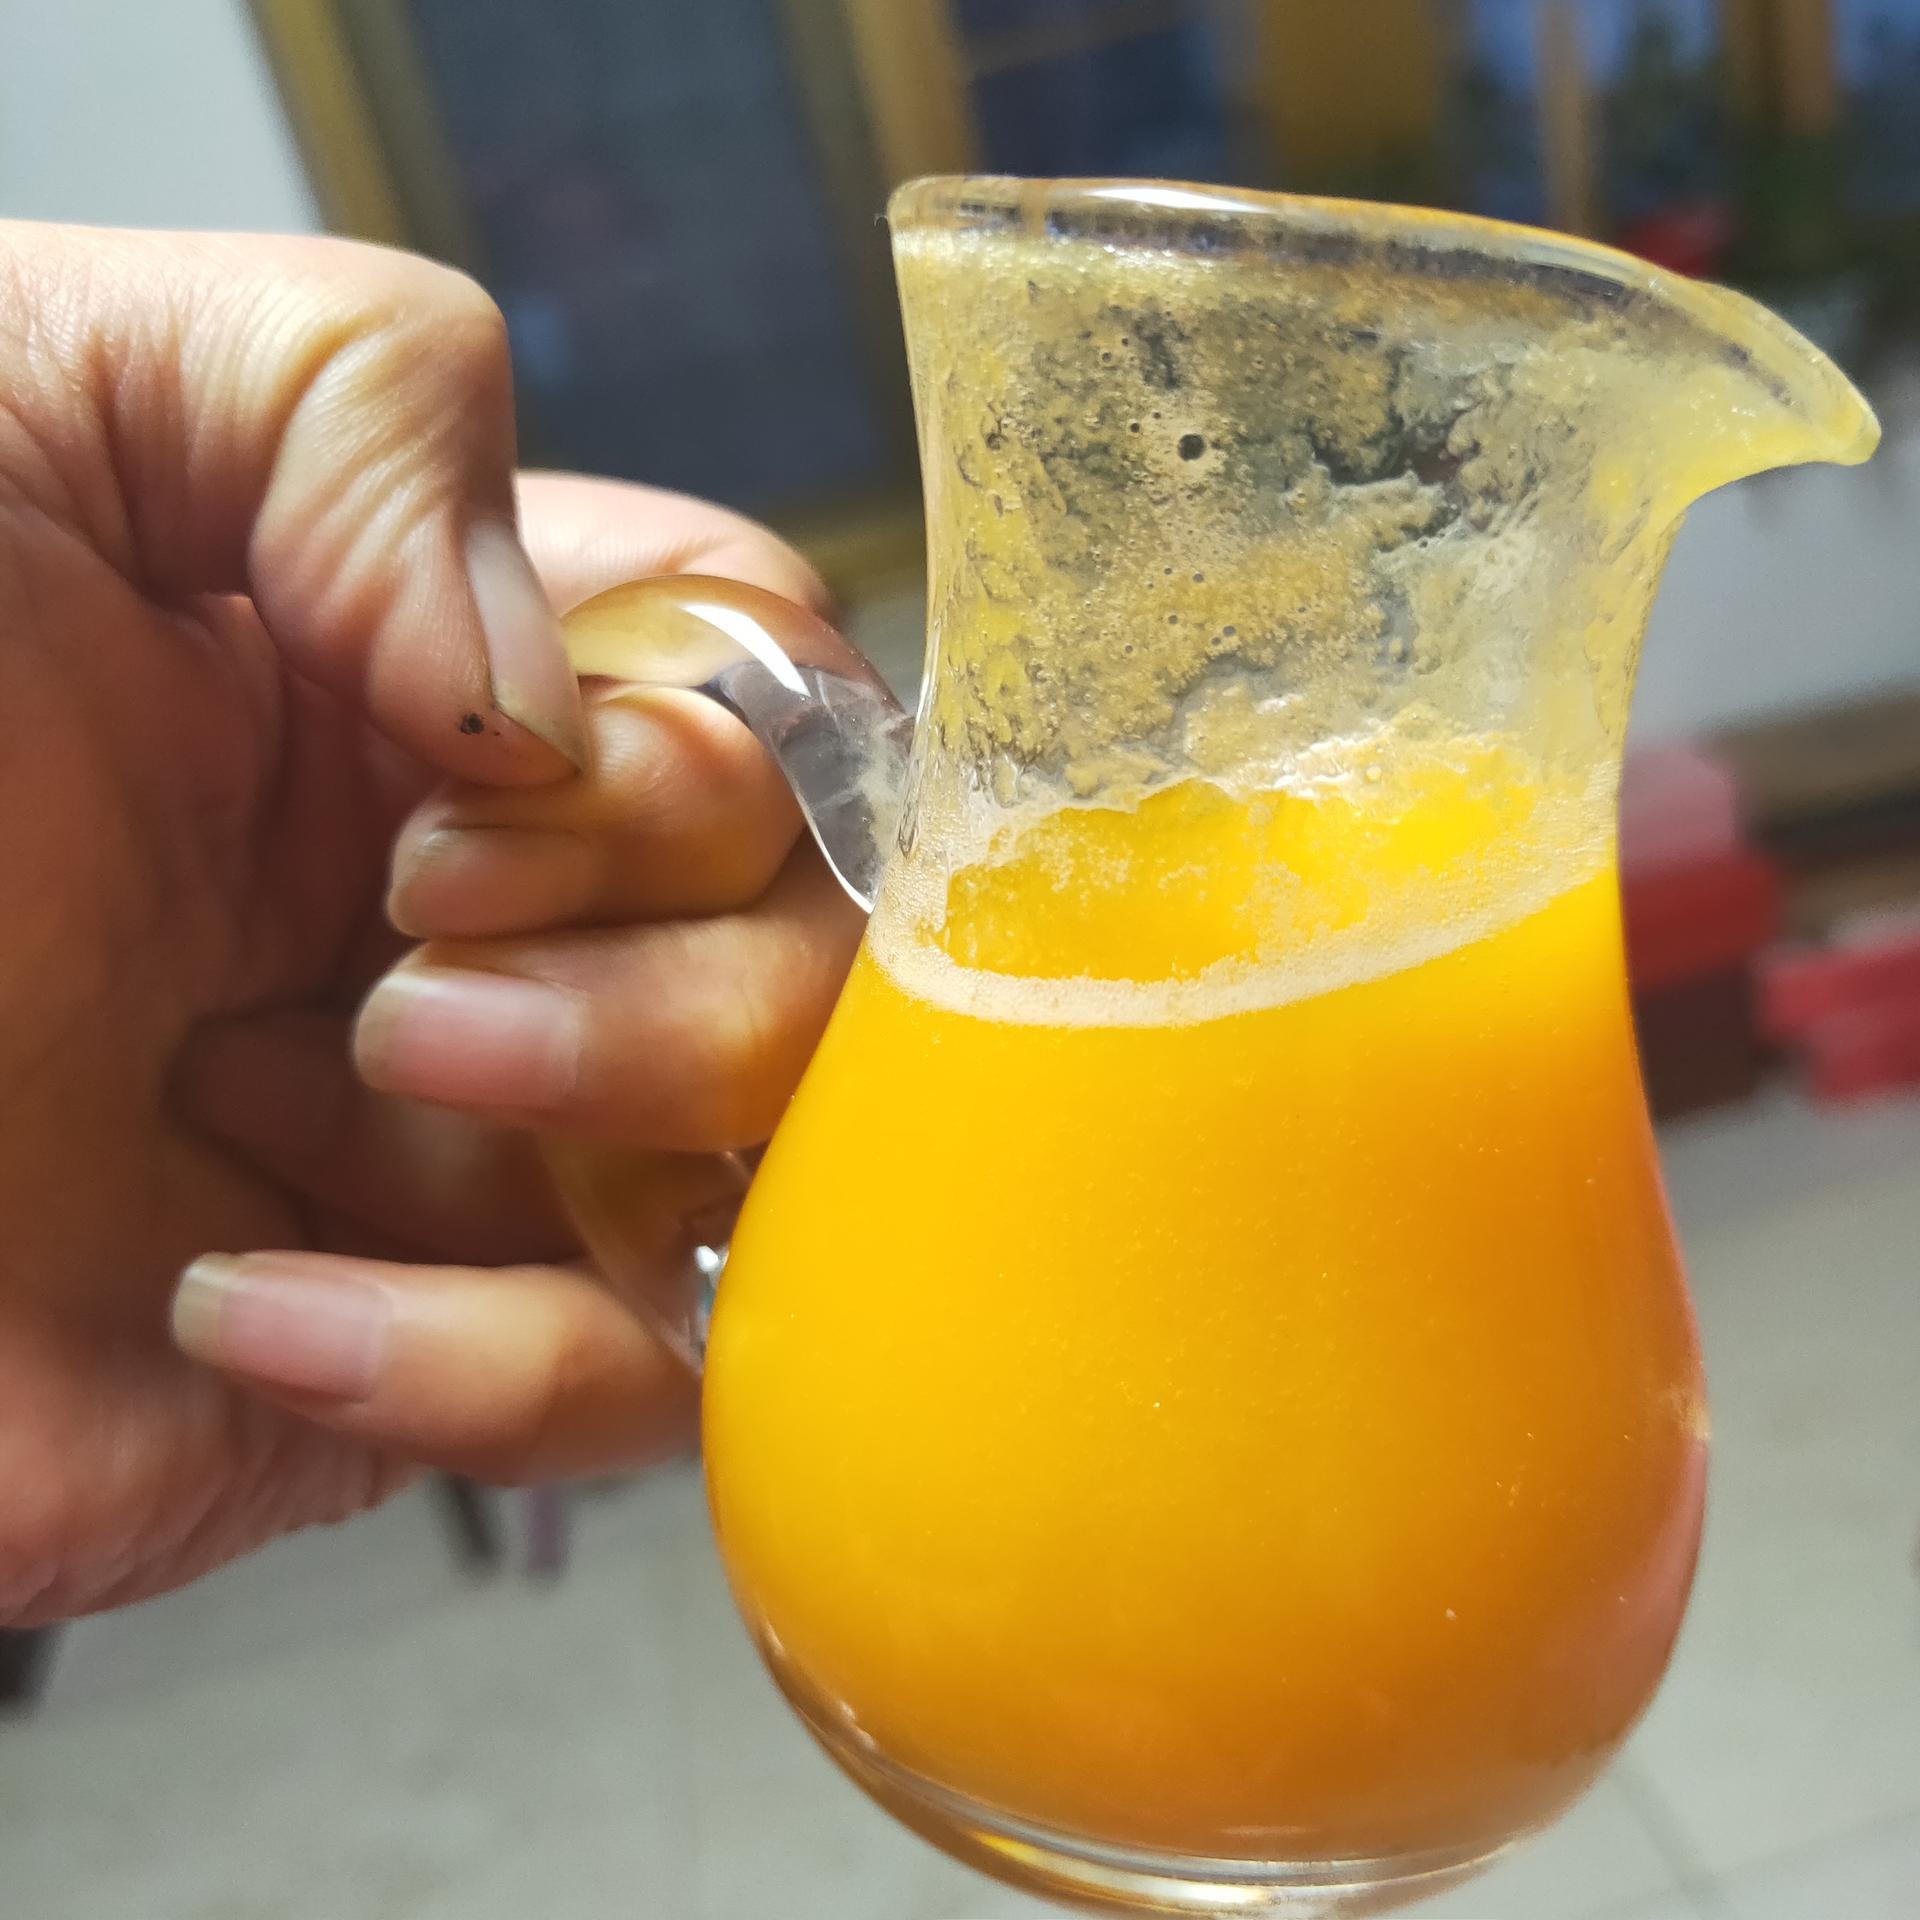 芒果浓缩汁5倍浓缩 芒果汁 原浆 芒果青汁  芒果果粉图片